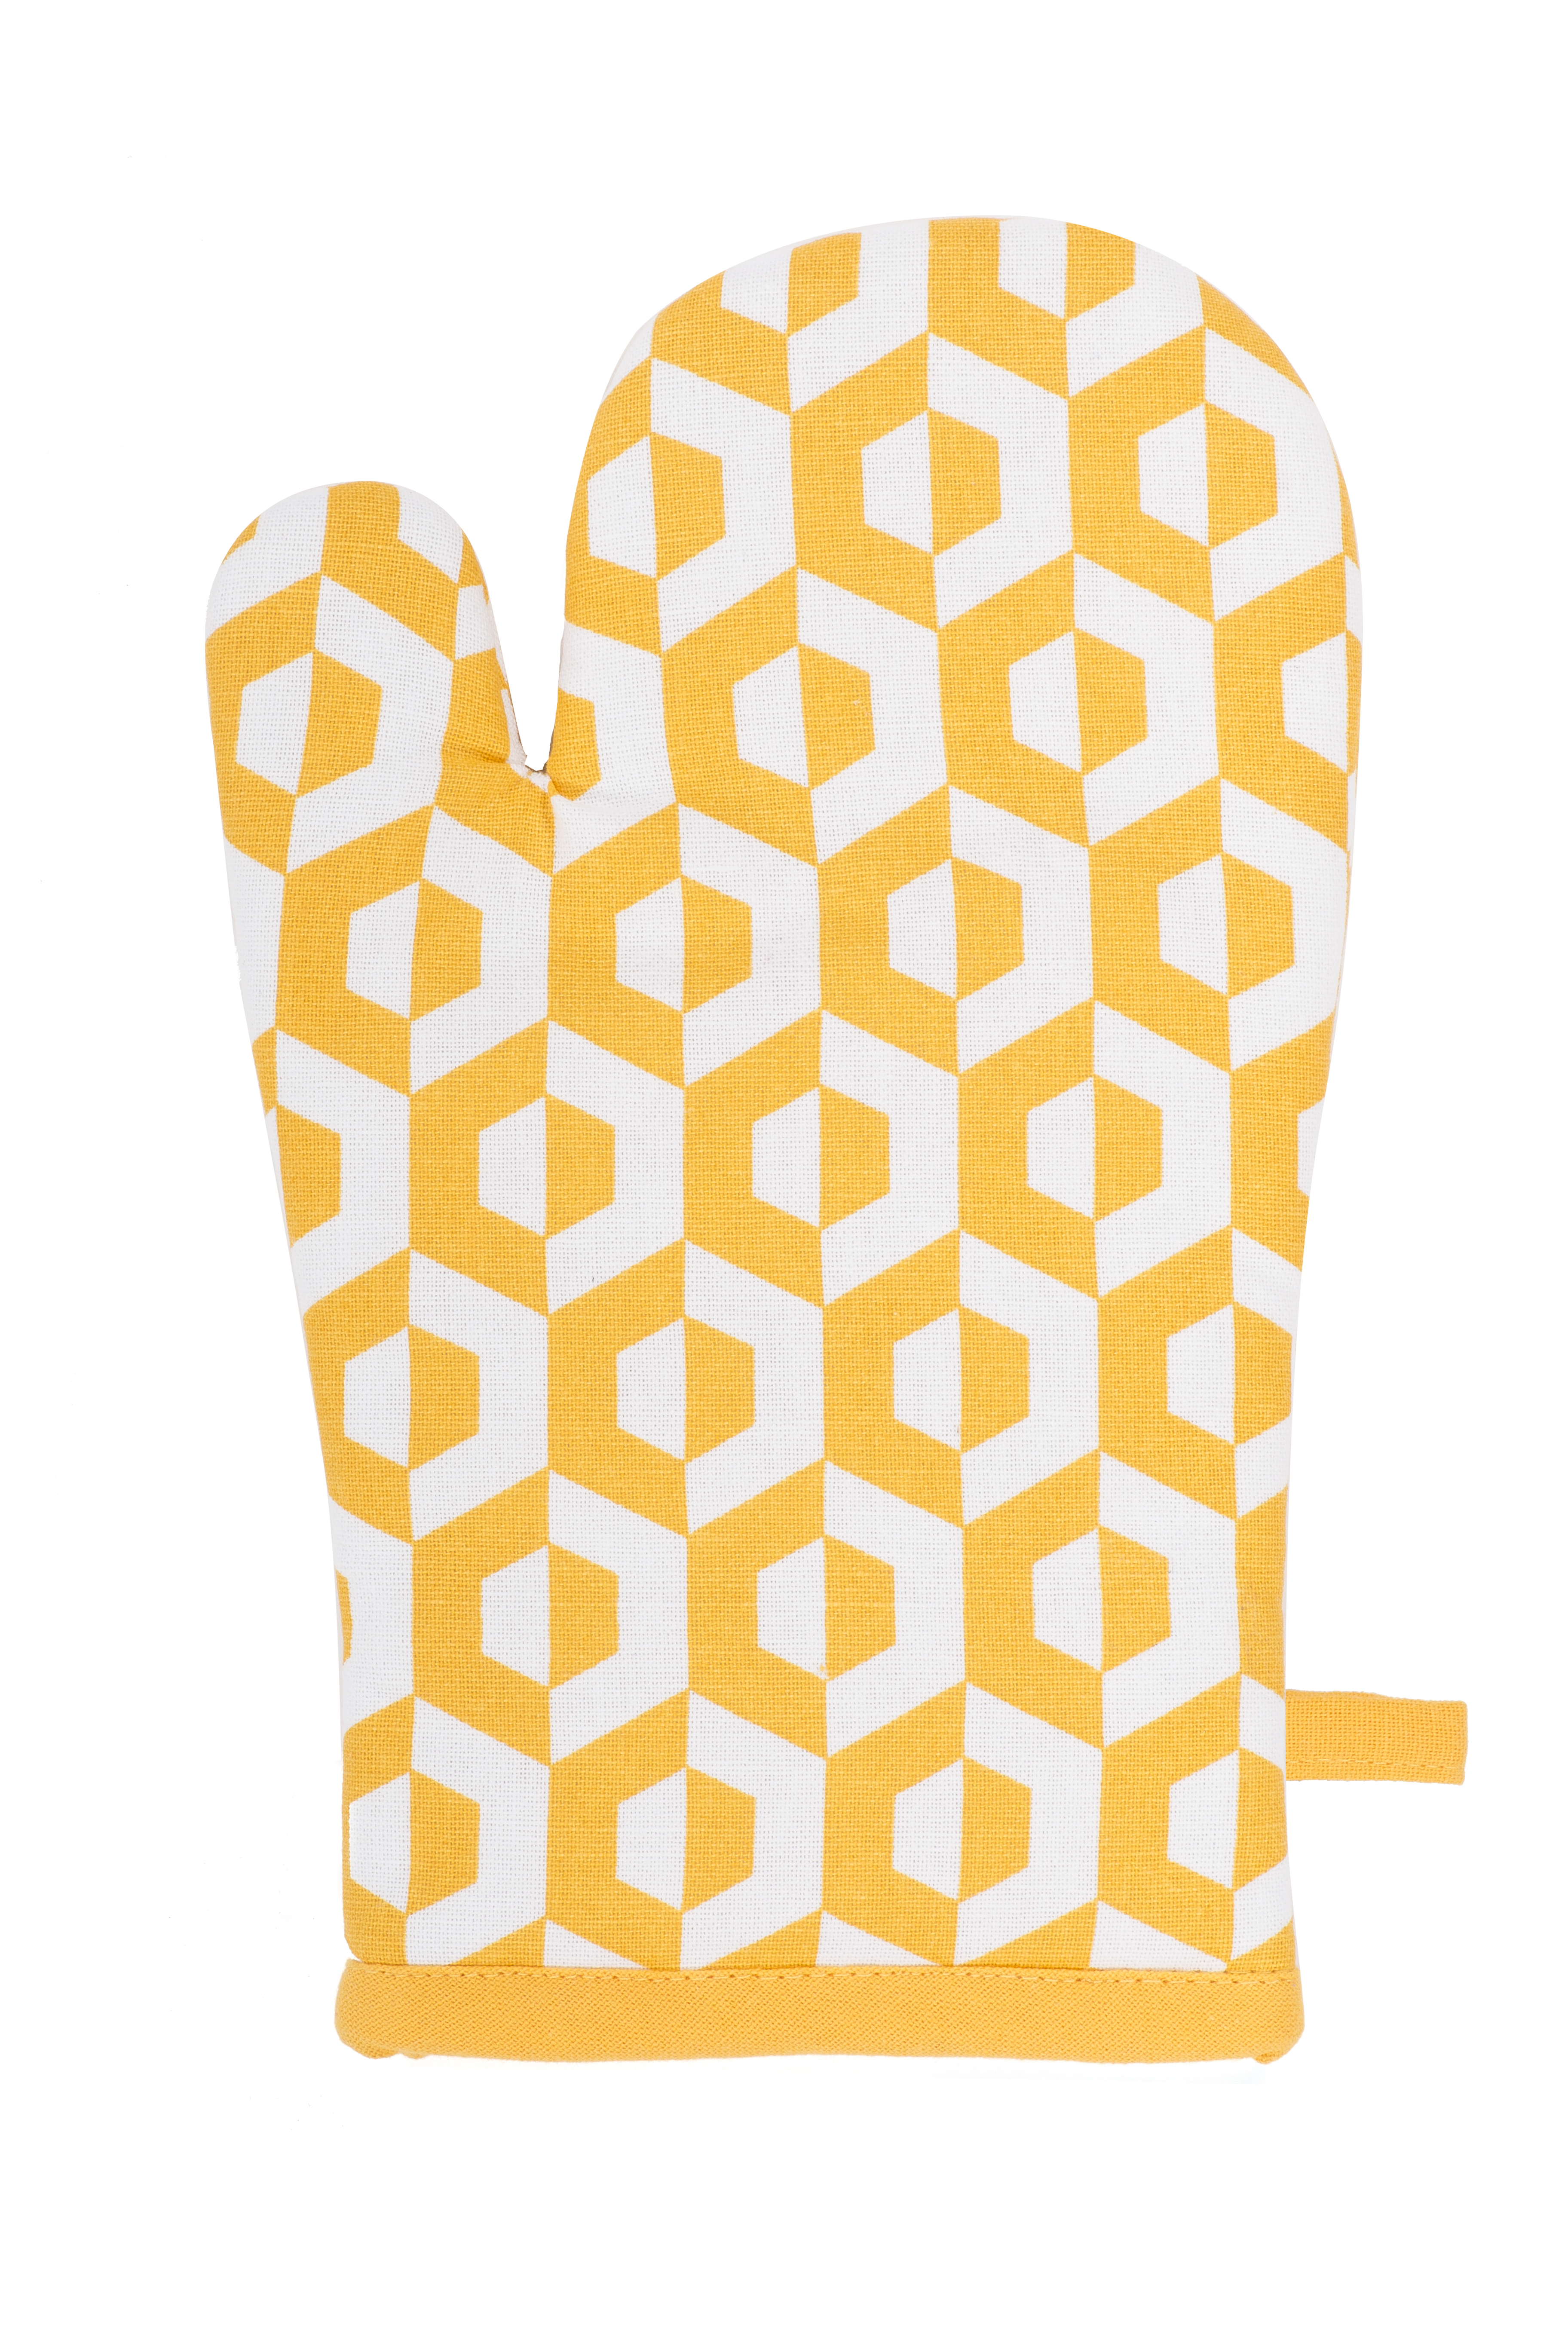 Gant geo hexagon 18x28 sur cintre, jaune